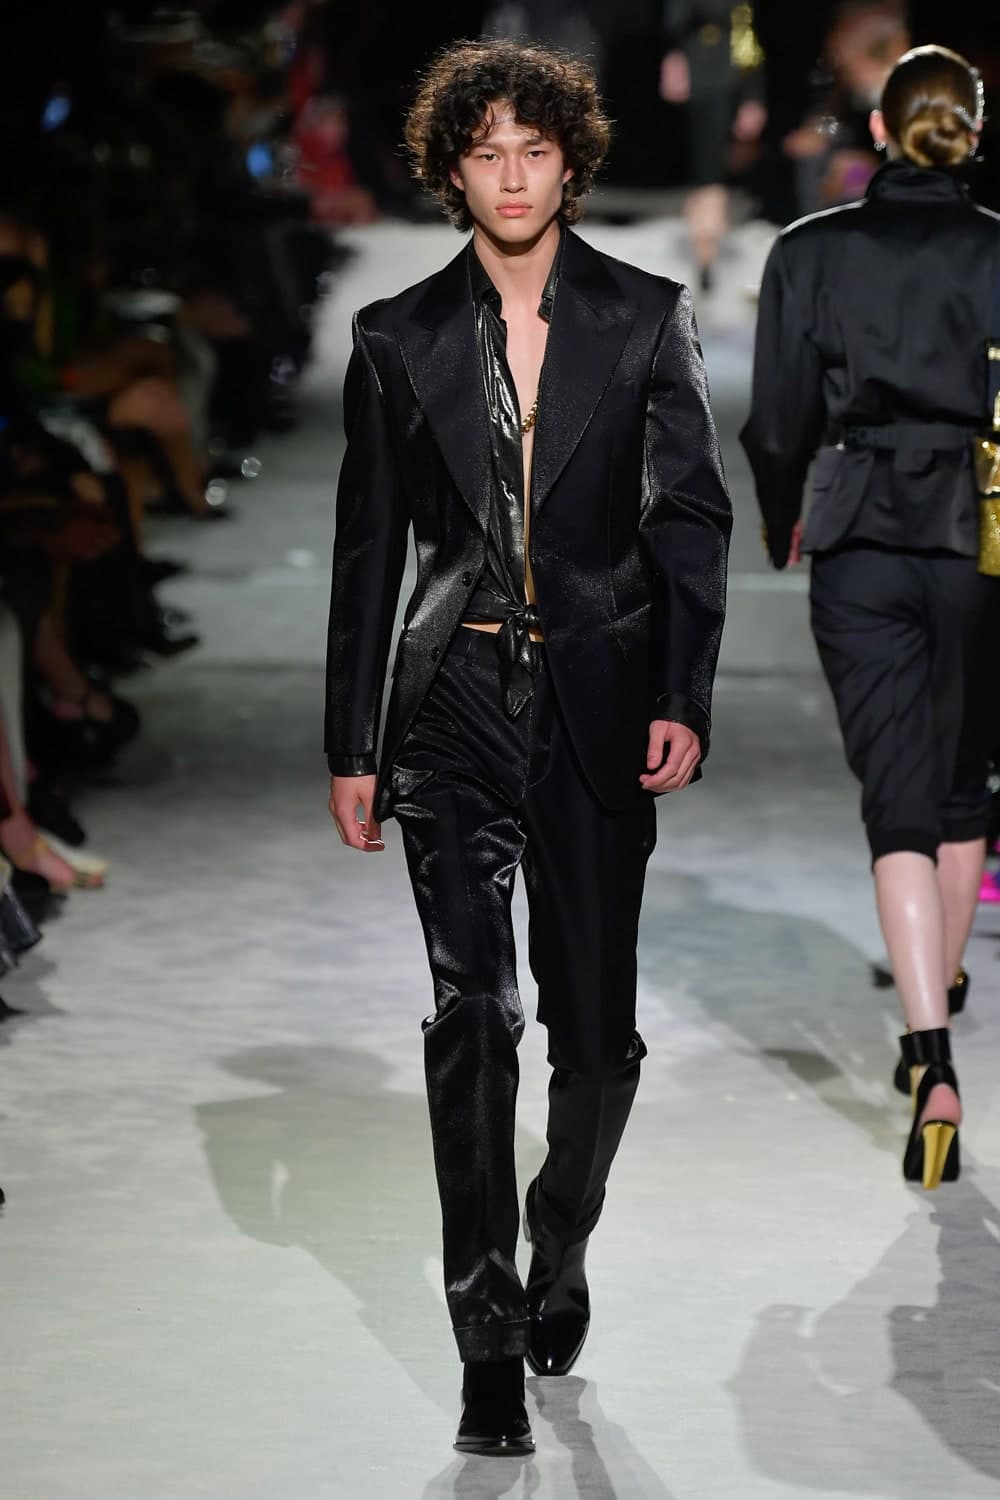 Tom Ford Menswear Ready To Wear Spring 2022 New York - Fashionably